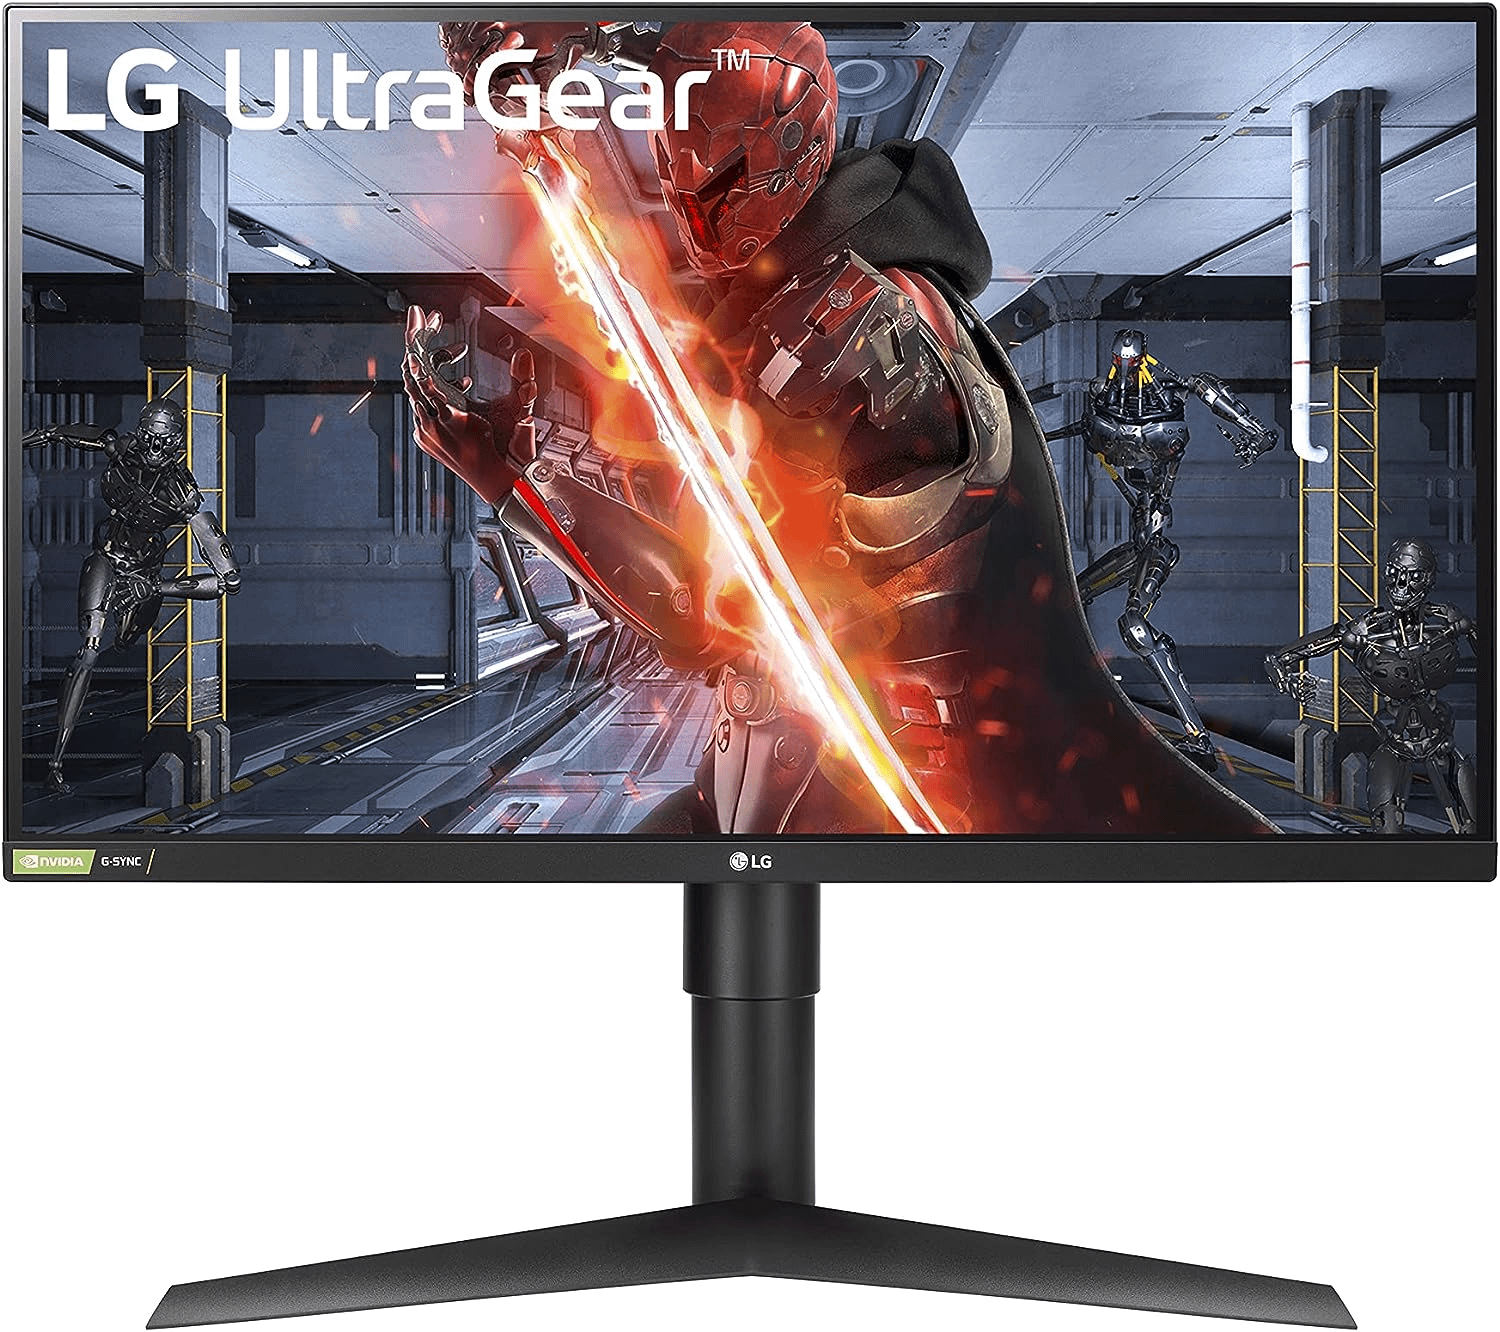 Black Friday Gaming Monitor Deals - LG UltraGear QHD 27-inch